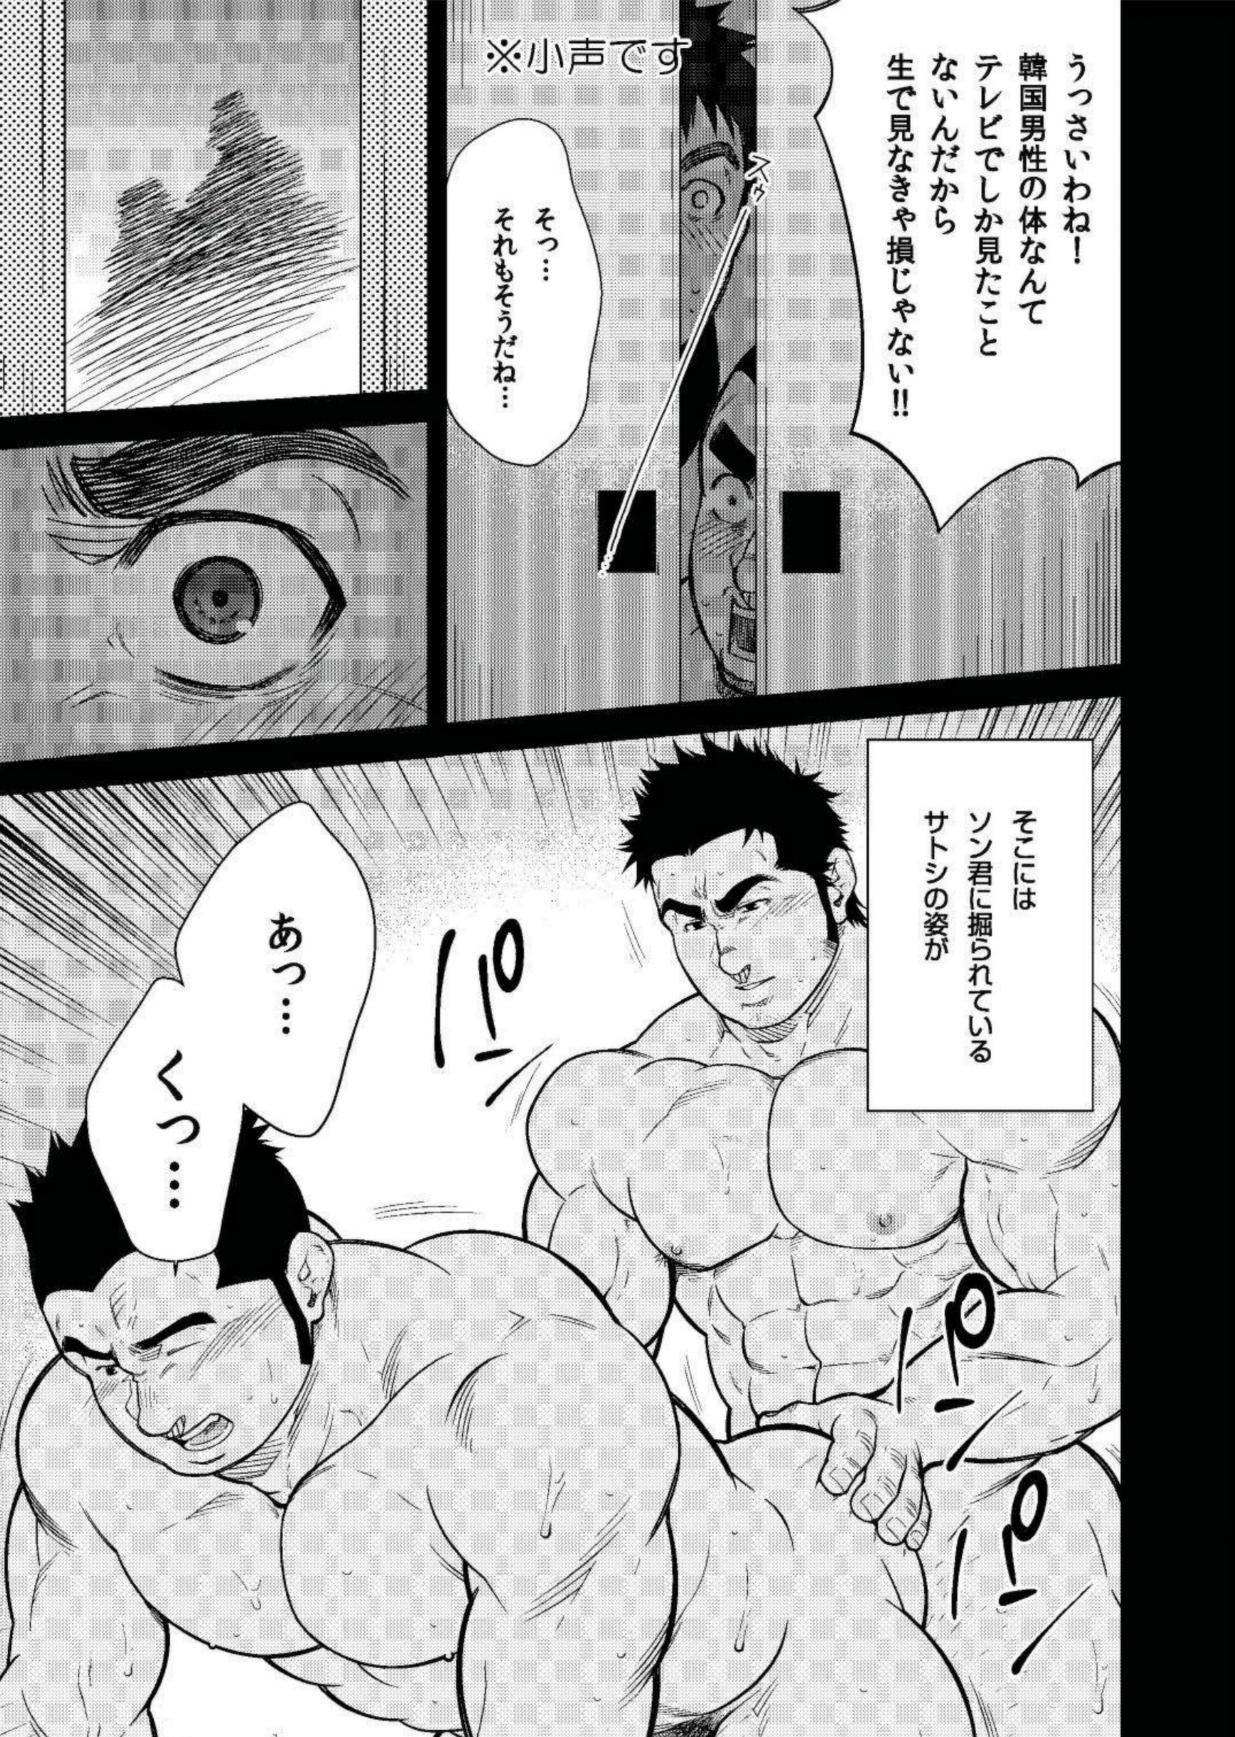 Cachonda Terujirou - 晃次郎 - Badi Bʌ́di (バディ) 119 (Jan 2016) Gay Youngmen - Page 5